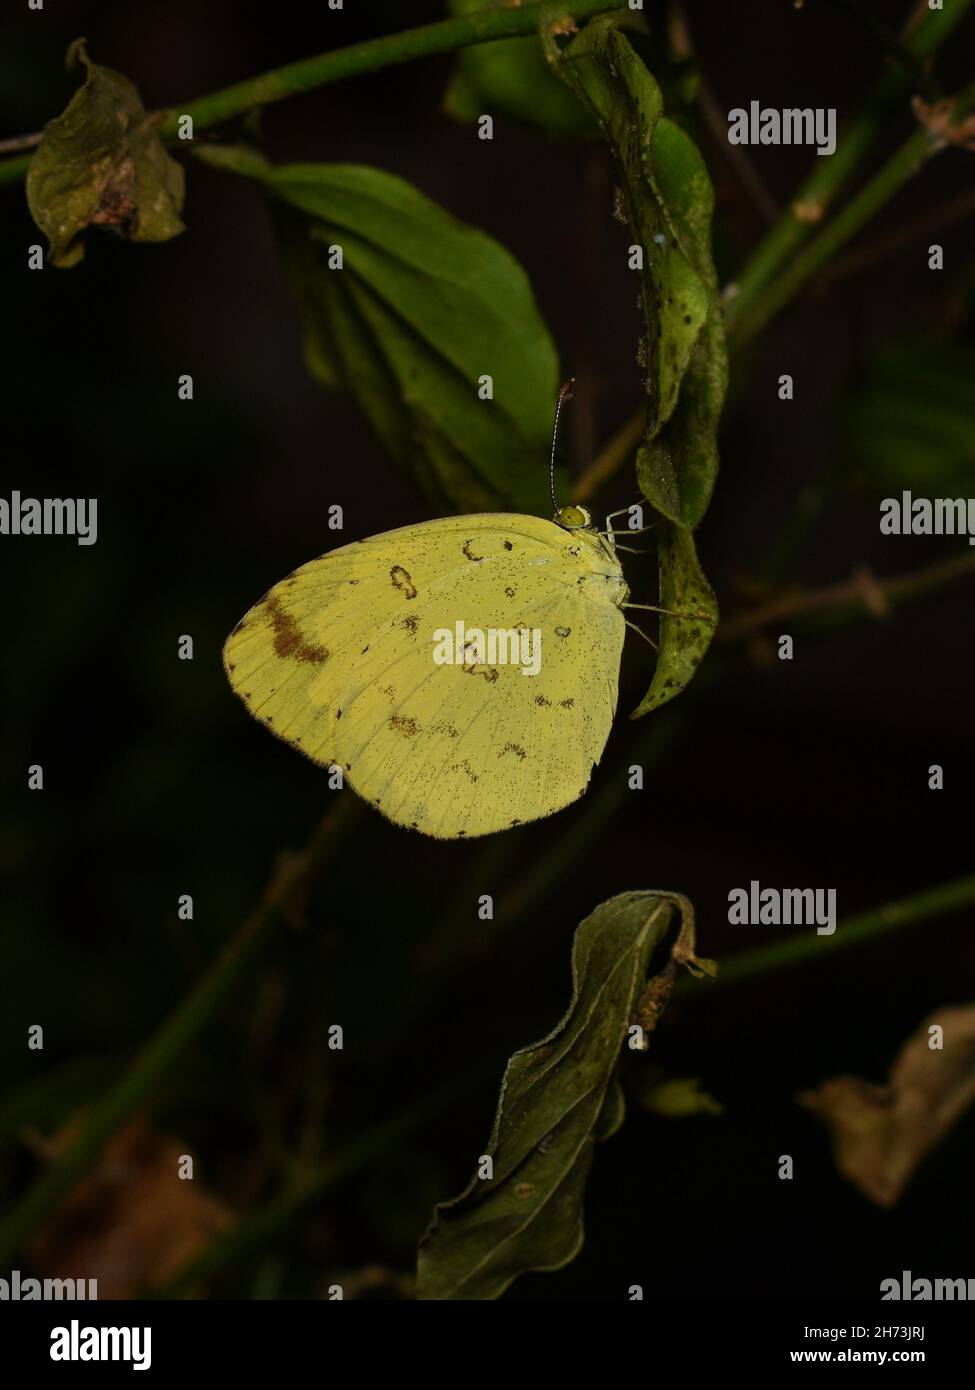 Farfalla gialla di erba comune che riposa su una foglia Foto Stock